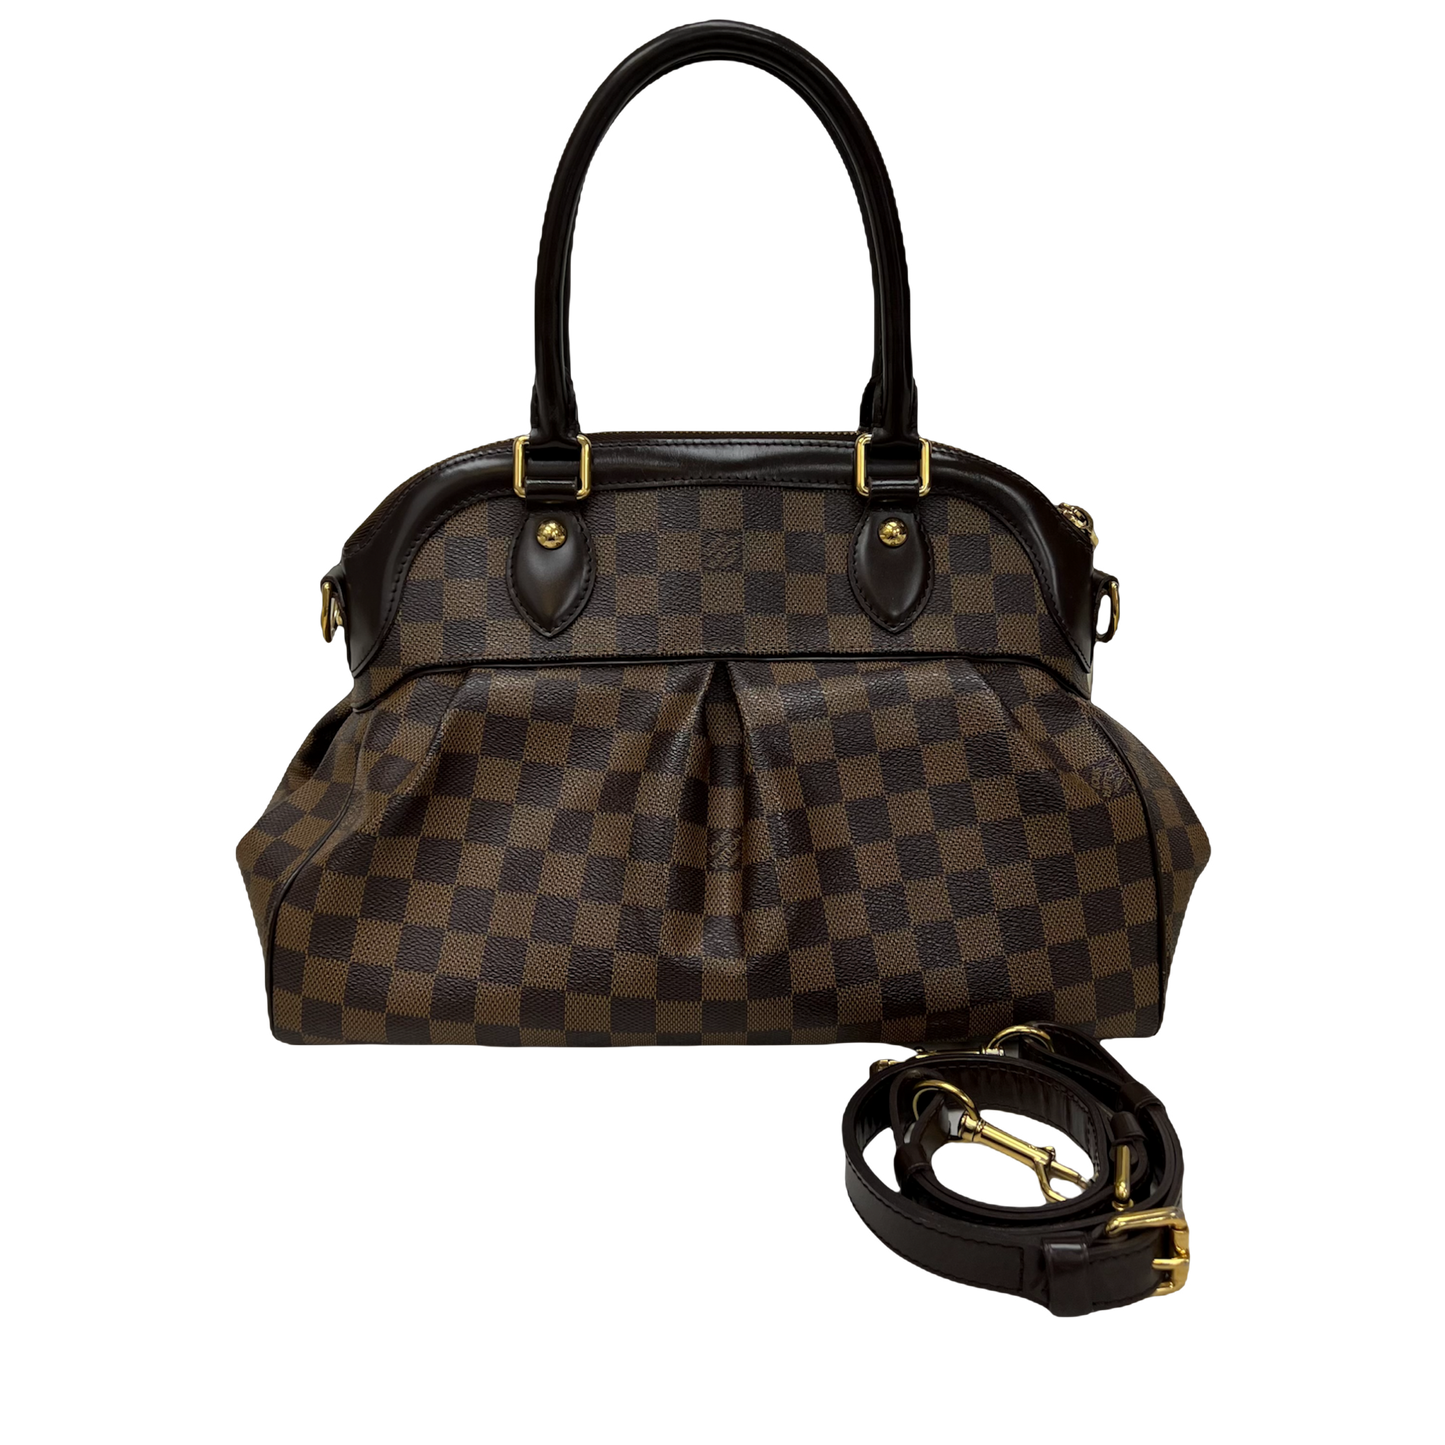 Louis Vuitton Trevi PM Damier Ebene Satchel Shoulder Bag